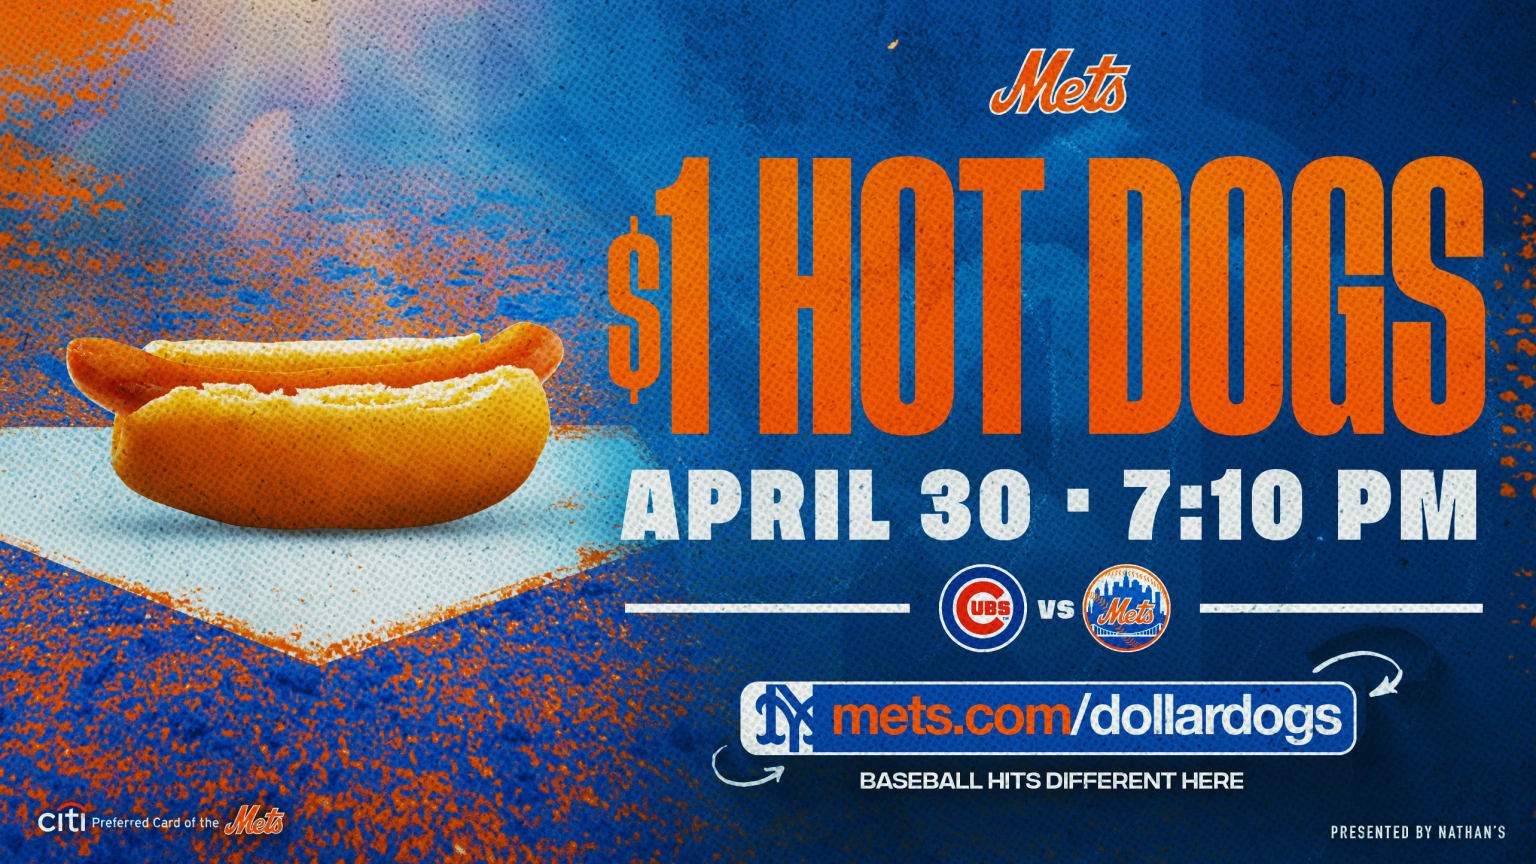 Mets Hot Dog Night Dollar Dog